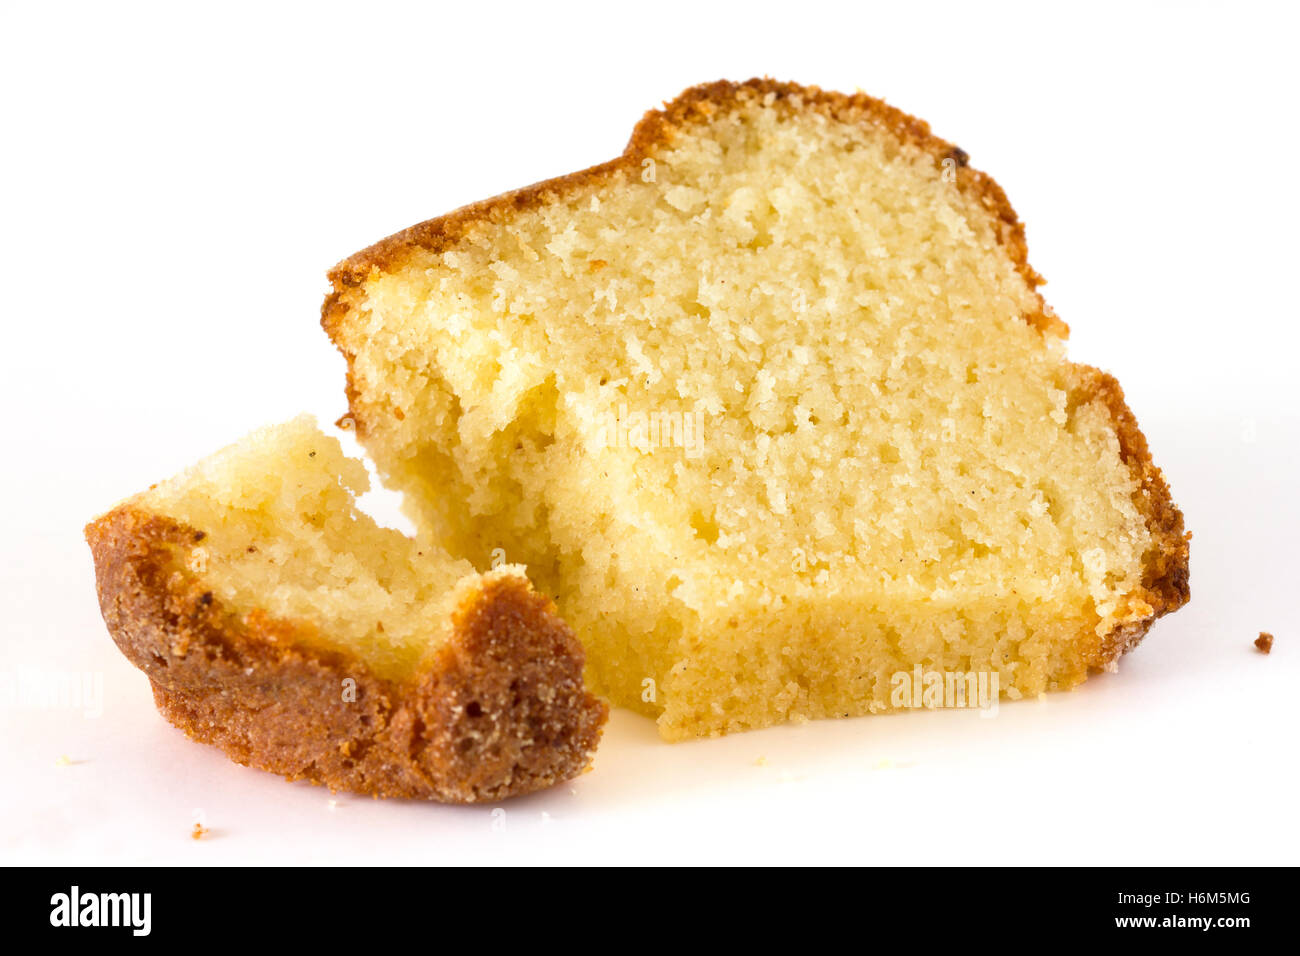 sponge, madeira or pound cake on white Stock Photo